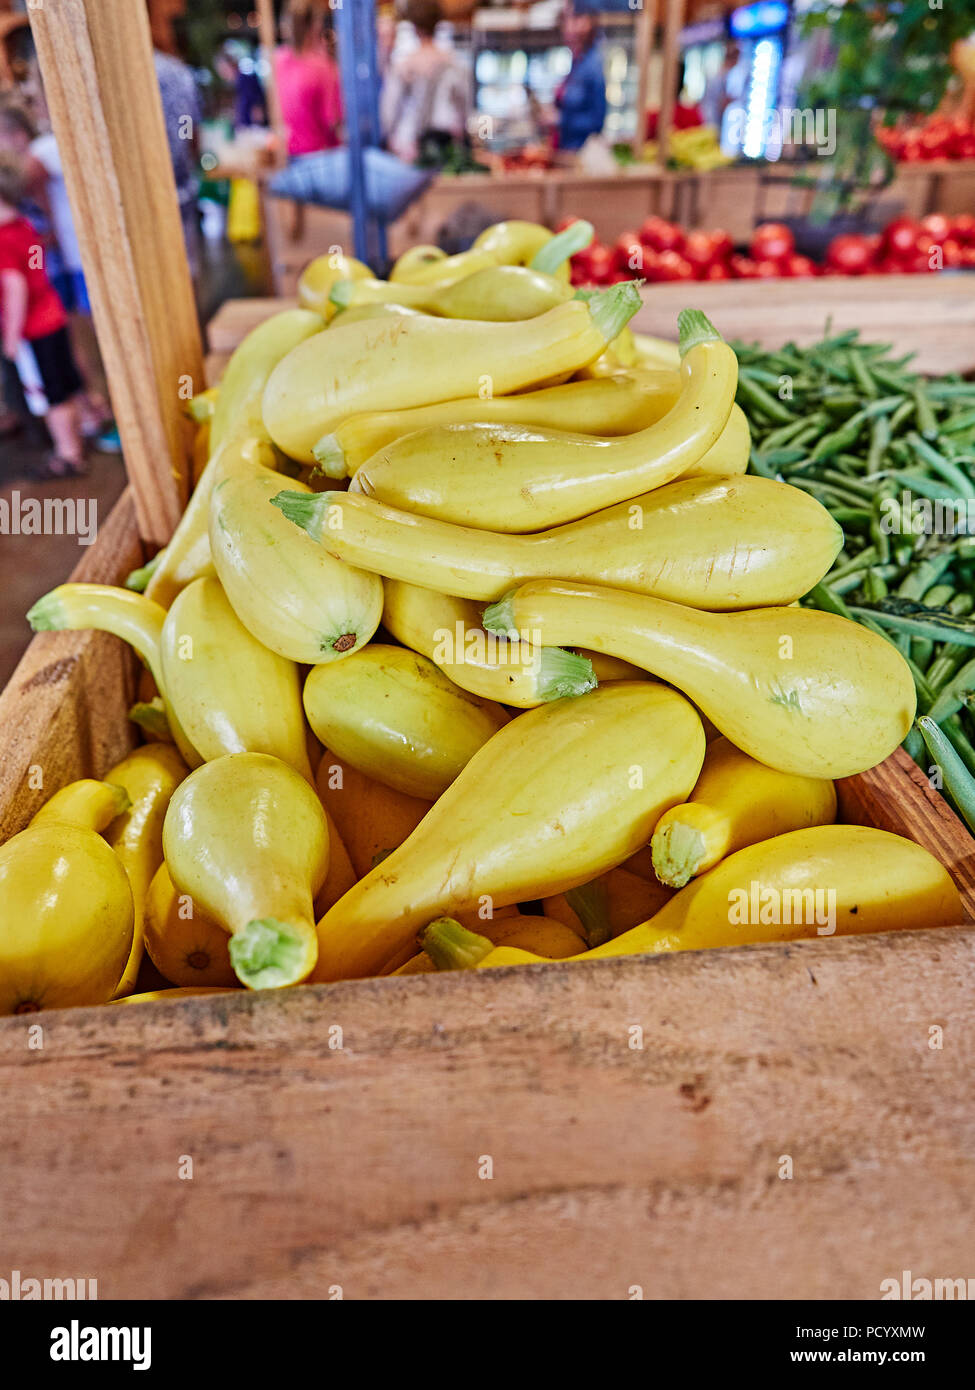 Gelbe Squash, grüne Brechbohnen und anderen frischen Gemüse auf der Anzeige für den Verkauf in einem strassenrand Farm oder Farmers Market in ländlichen Alabama USA. Stockfoto